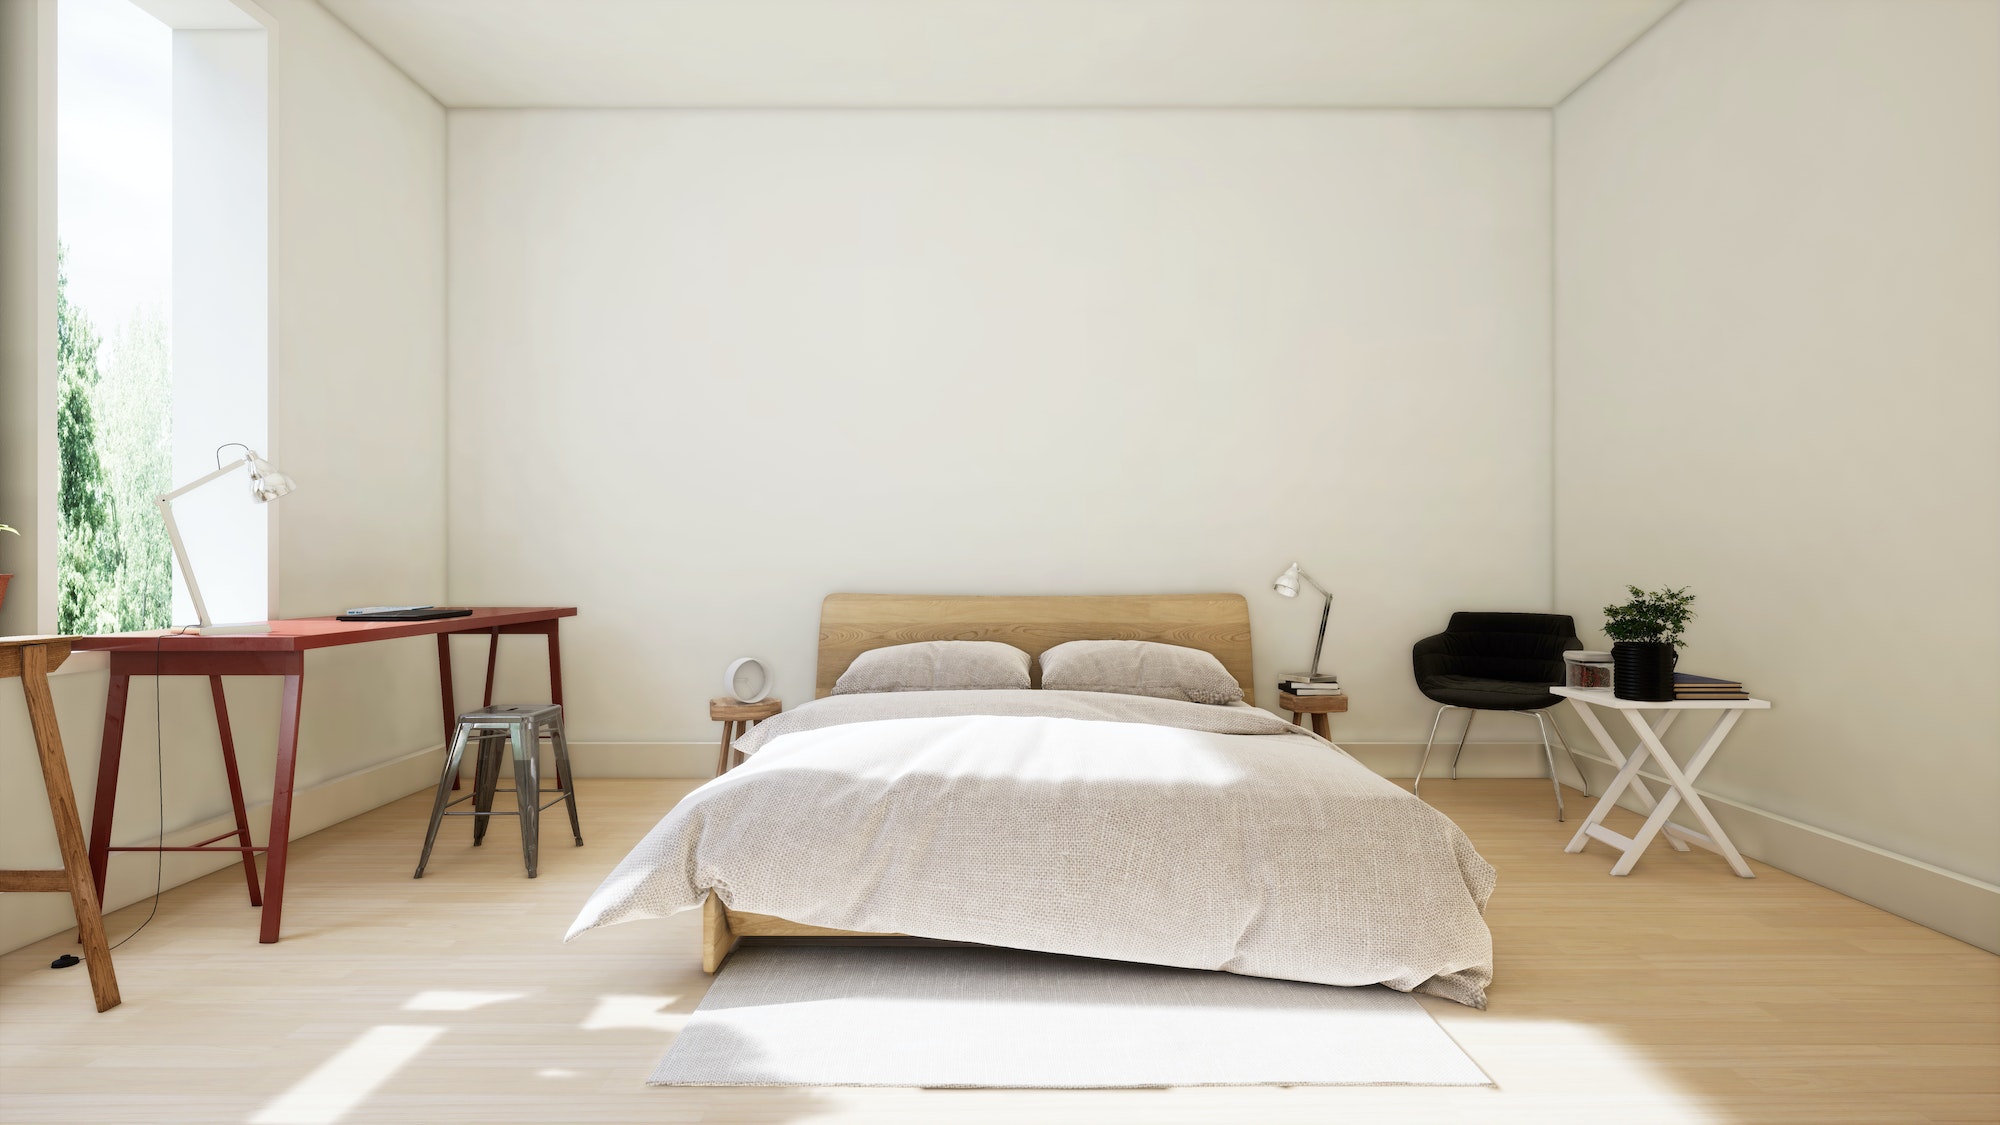 Bedroom design modern